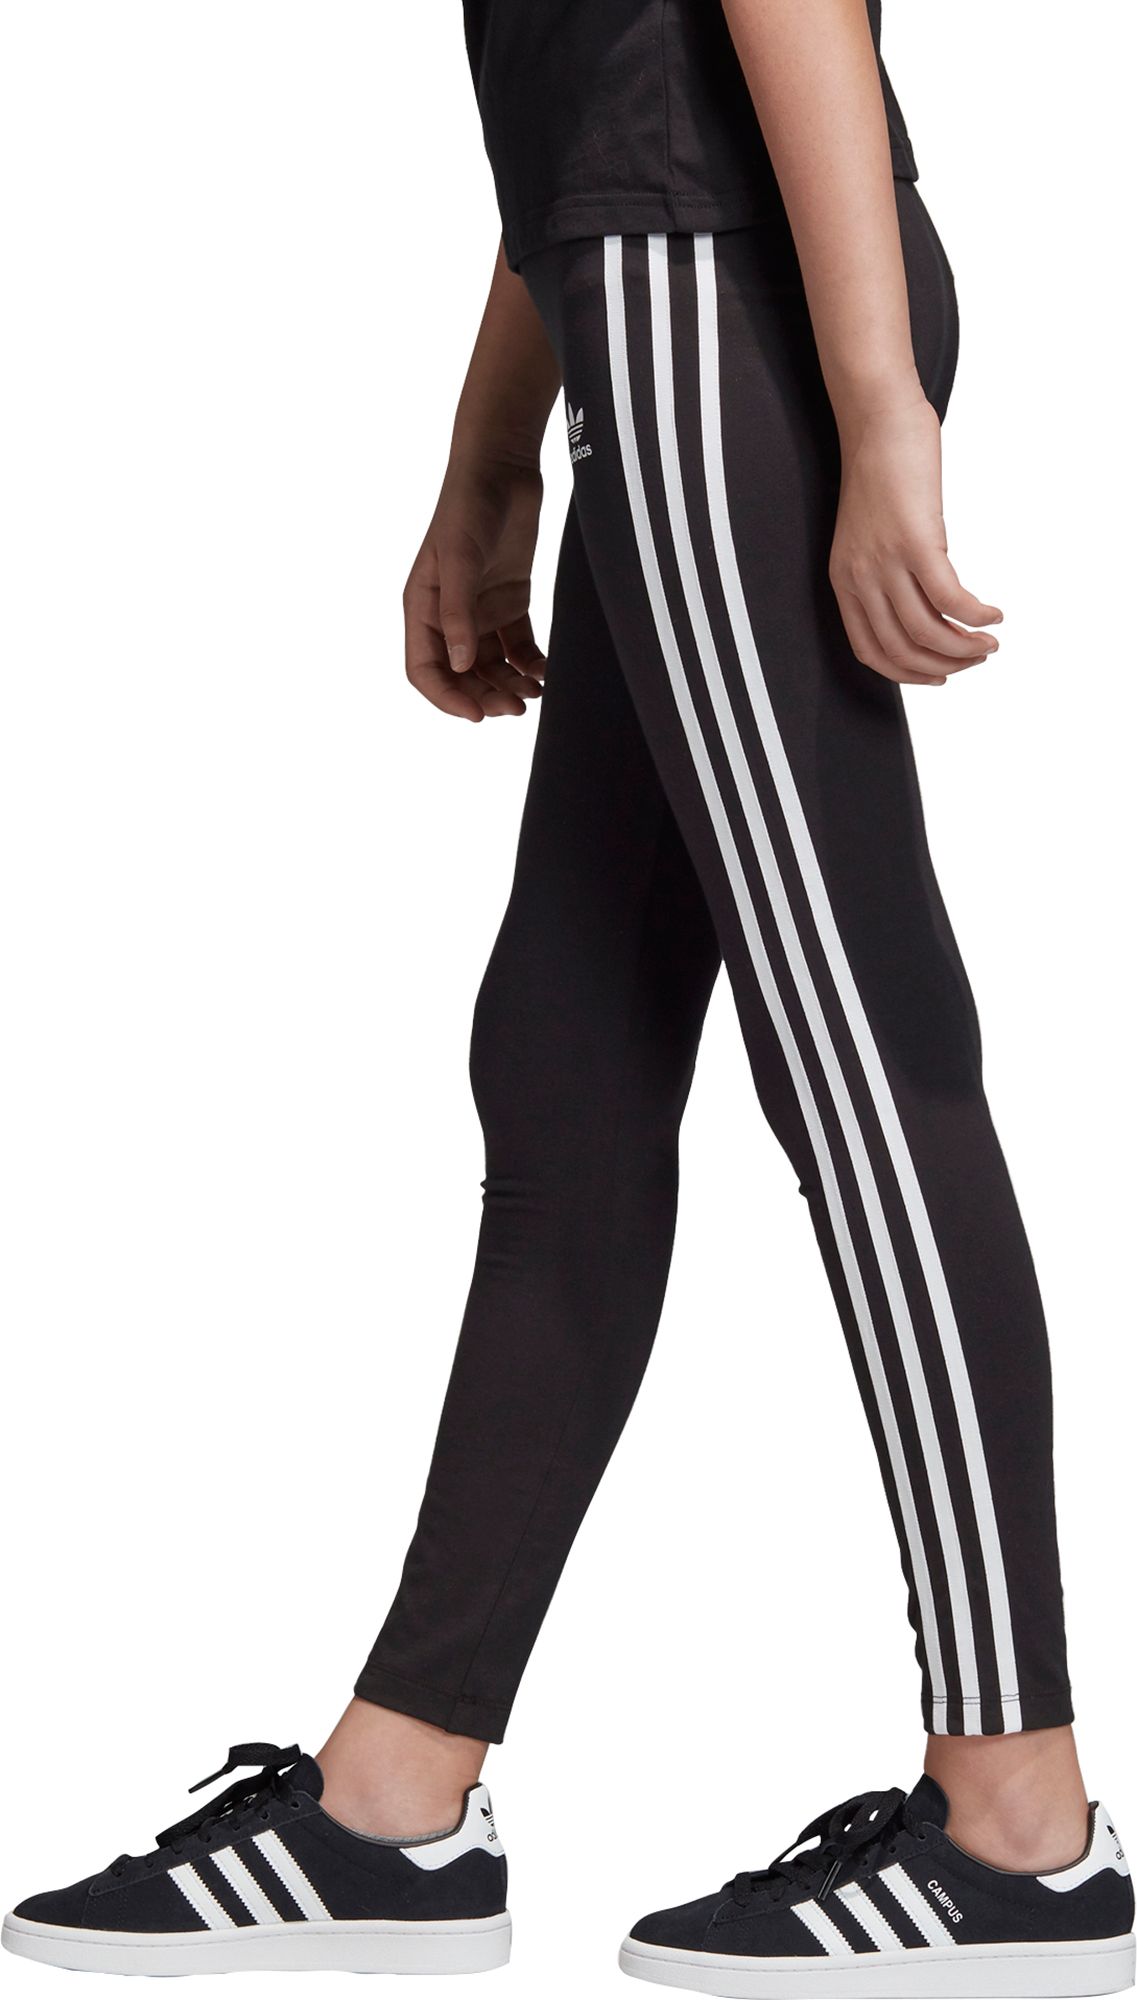 3 stripe leggings by adidas originals